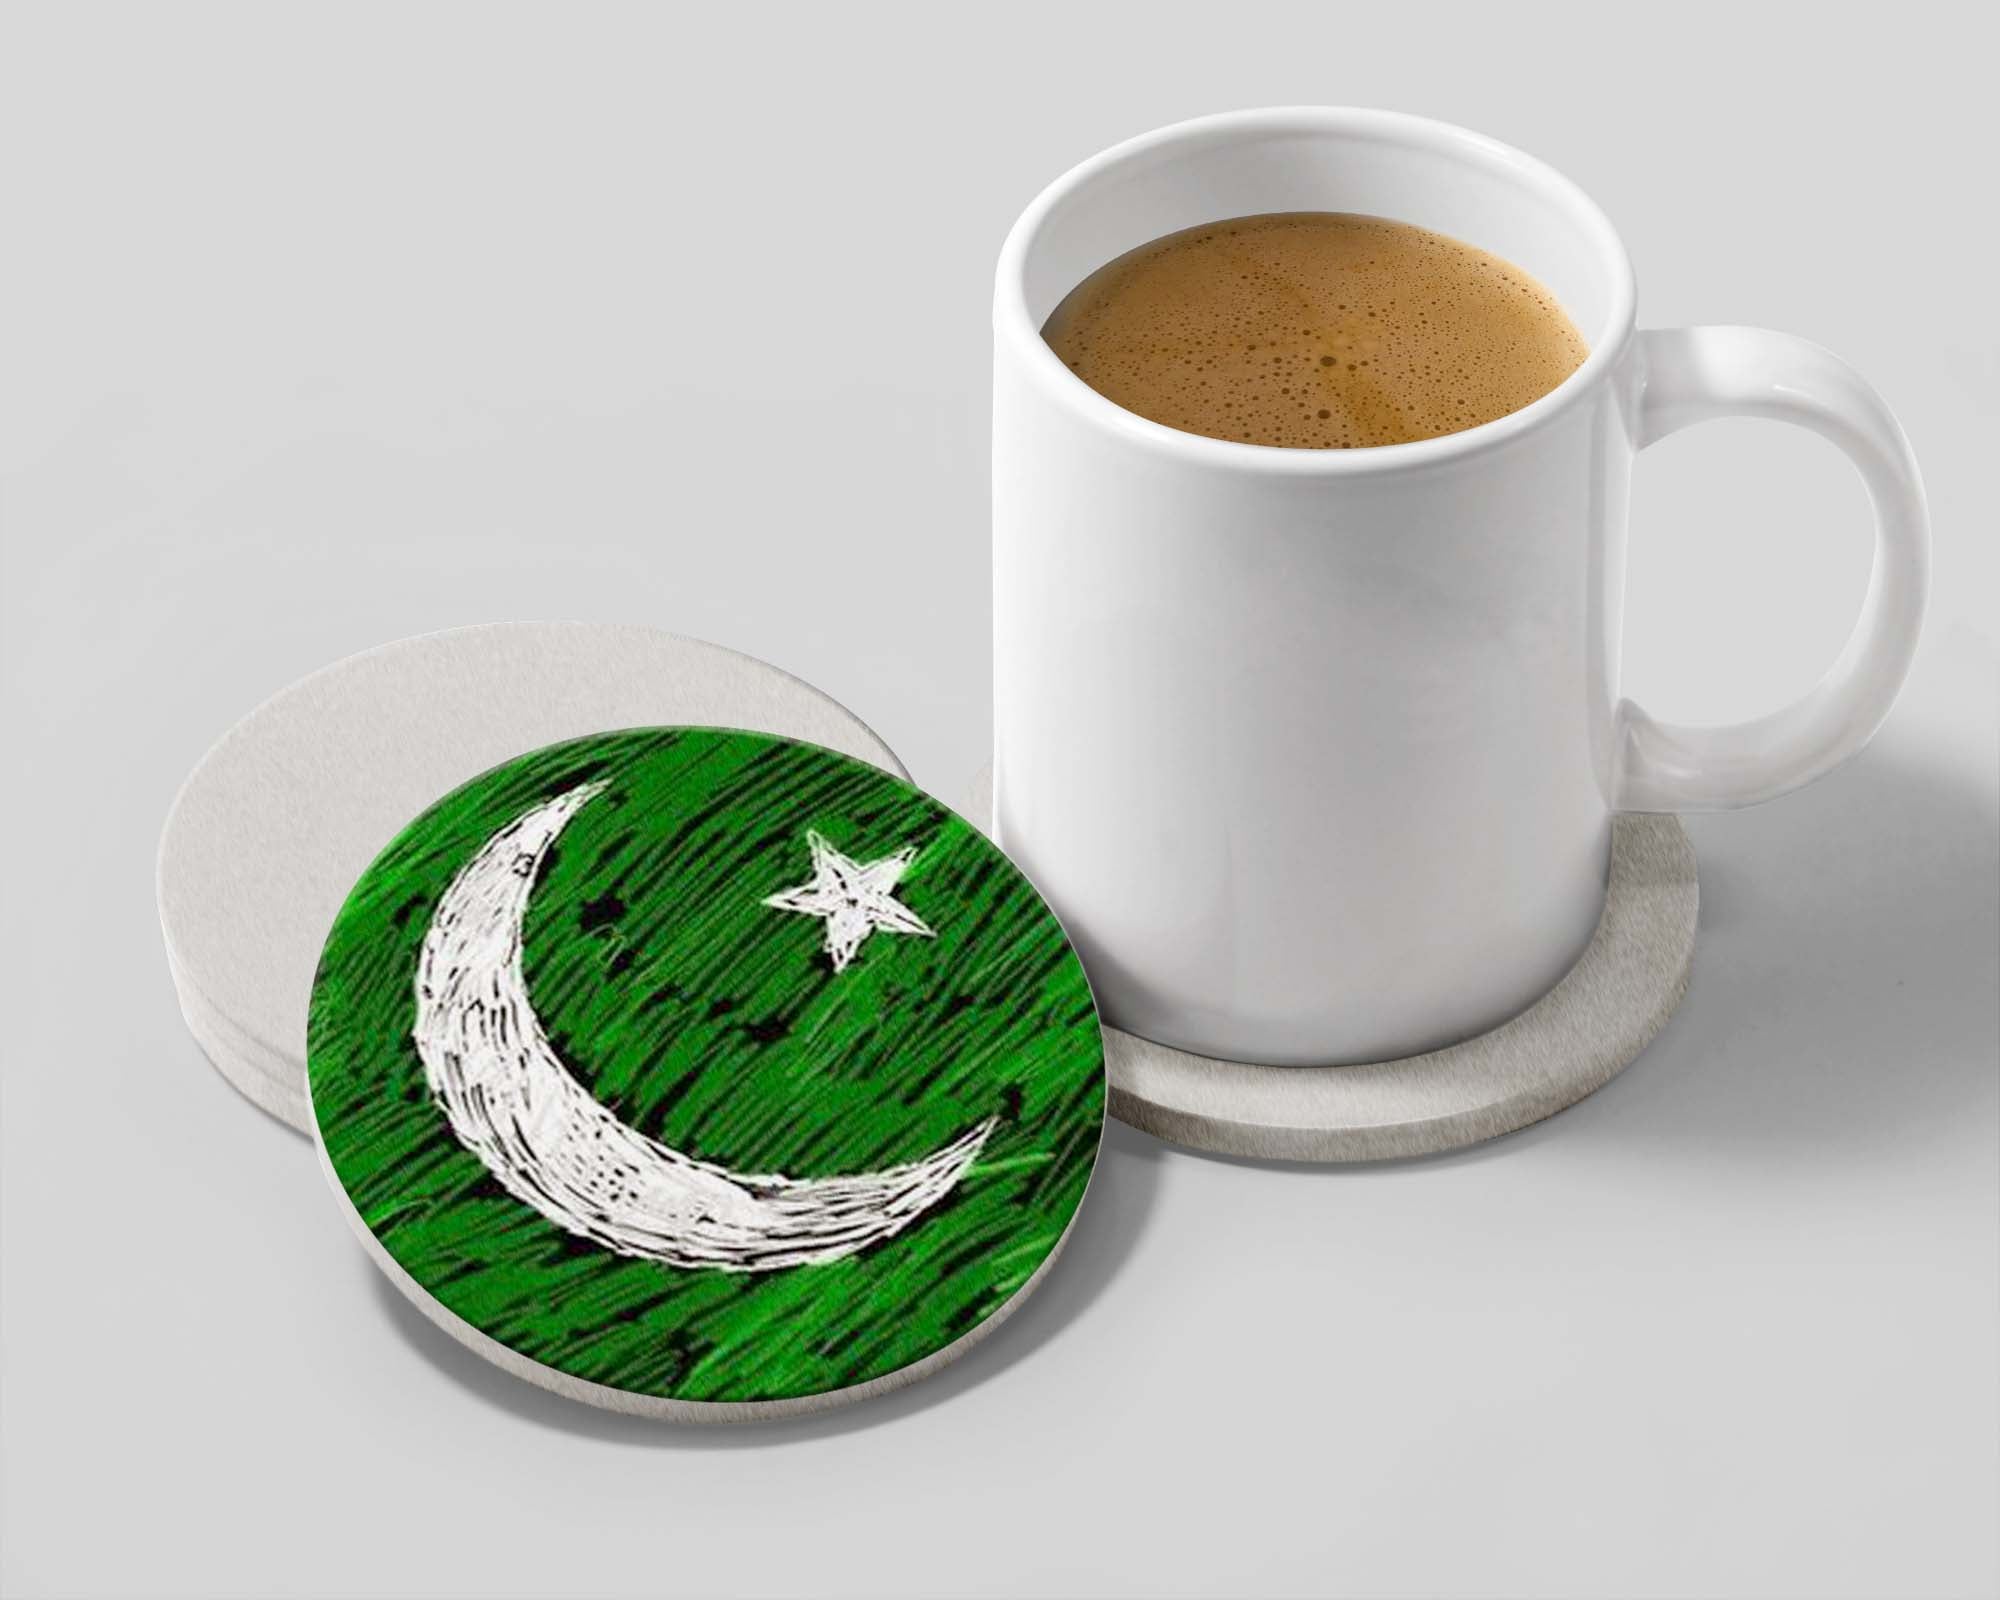 Pakistan Special Tea coasters